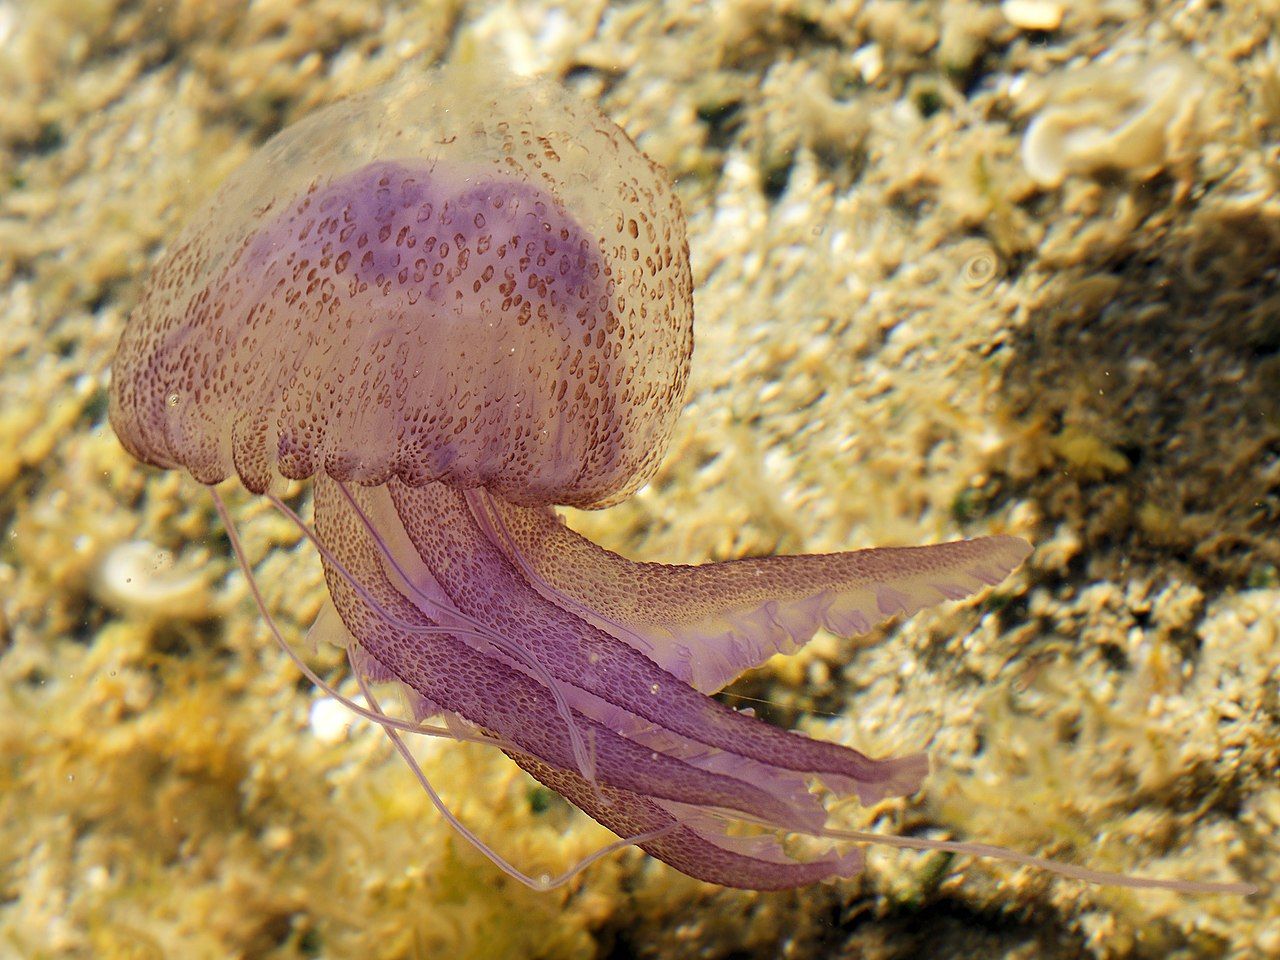 Una Pegalia noctulia, la medusa que es va trobar a la Costa Brava